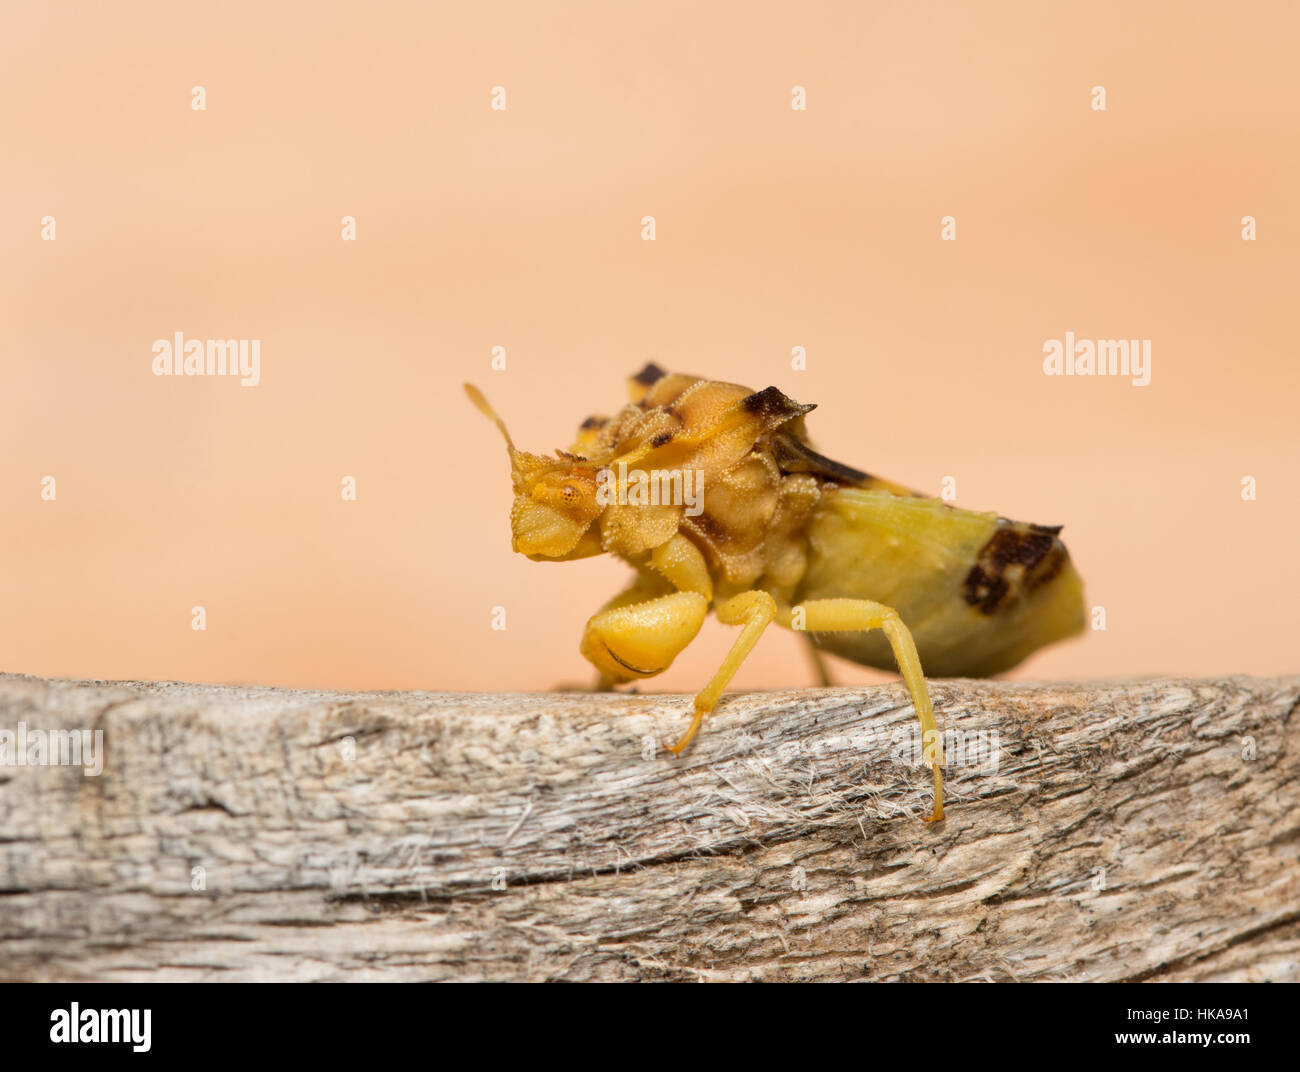 La Préhistoire à Jagged Ambush Bug sur un morceau de bois Banque D'Images